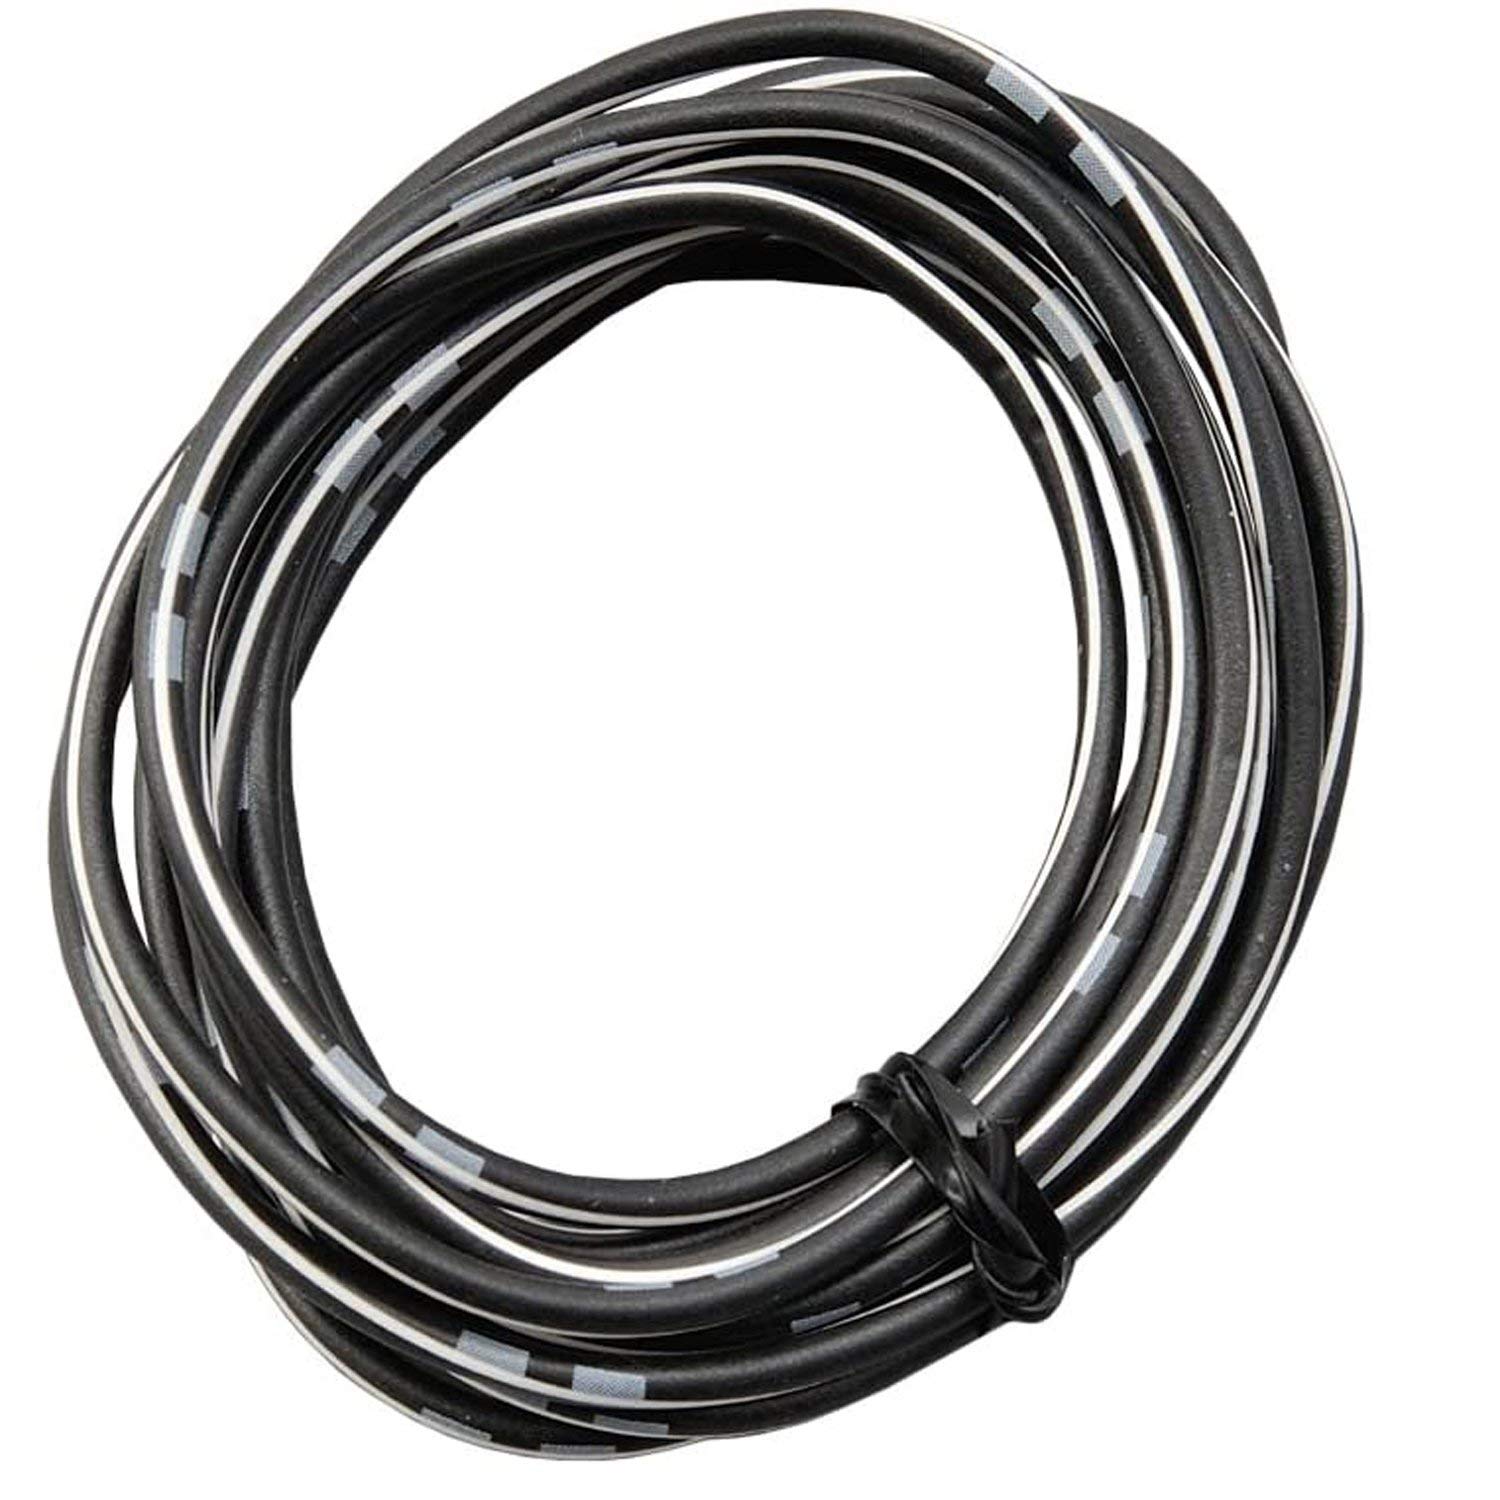 DAYTONA farbiges Kabel AWG18 0.75qmm, 2 Meter, schwarz/weiß von Daytona